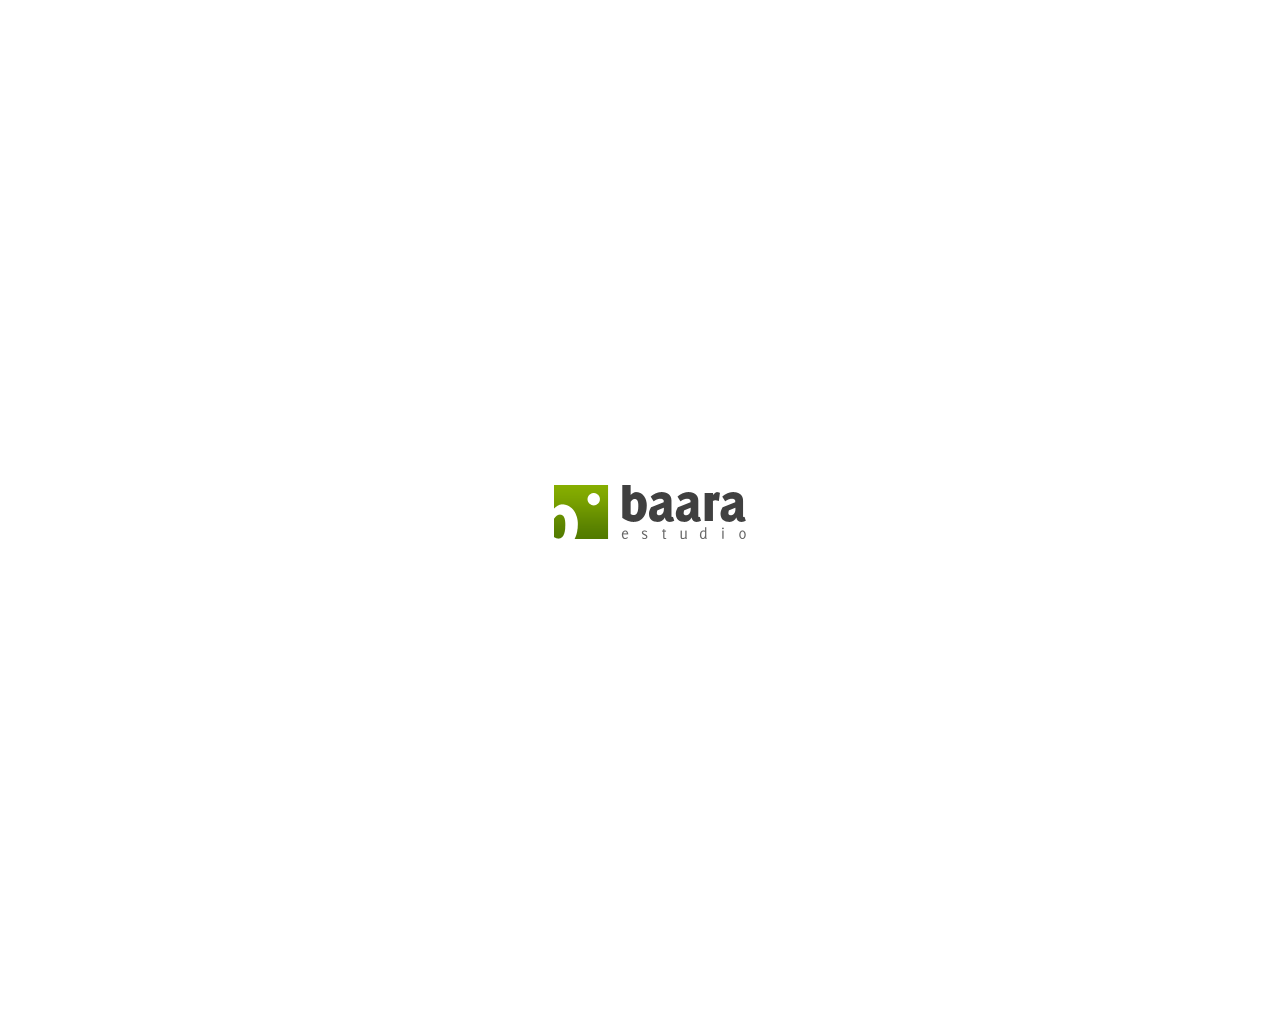 baara.com